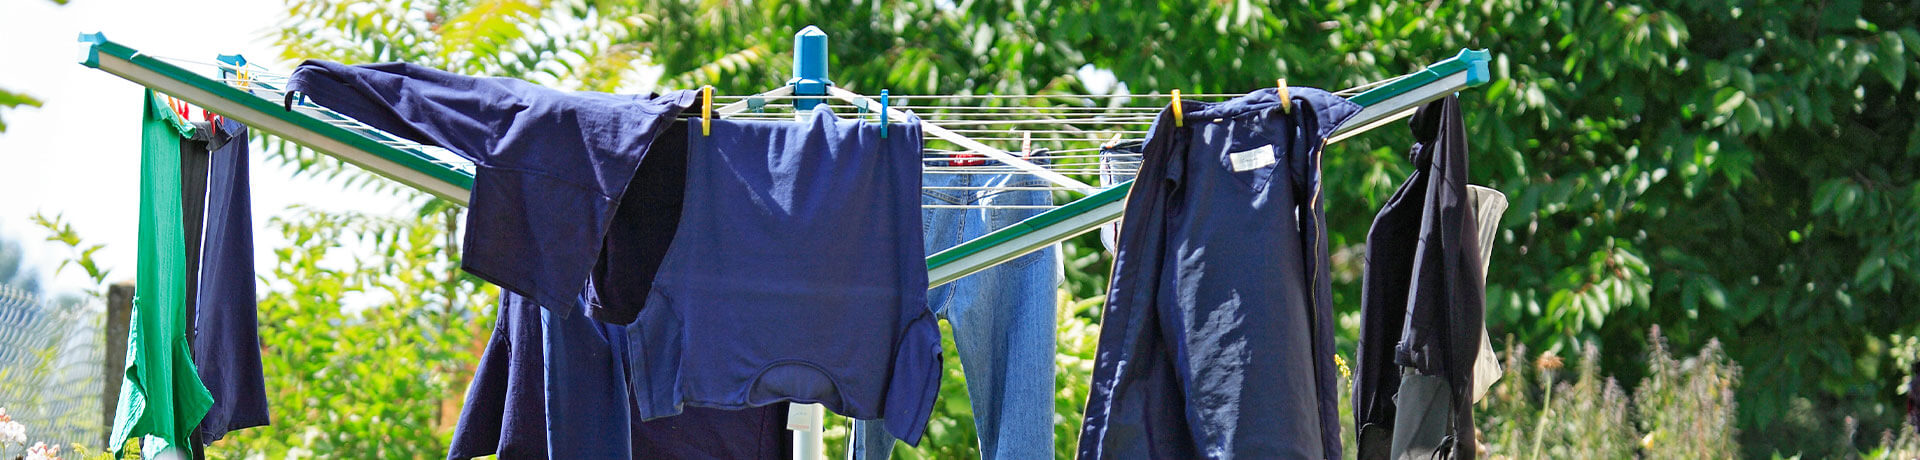 Wäscheklammern in Lila für die Haushaltshilfe Karstädt